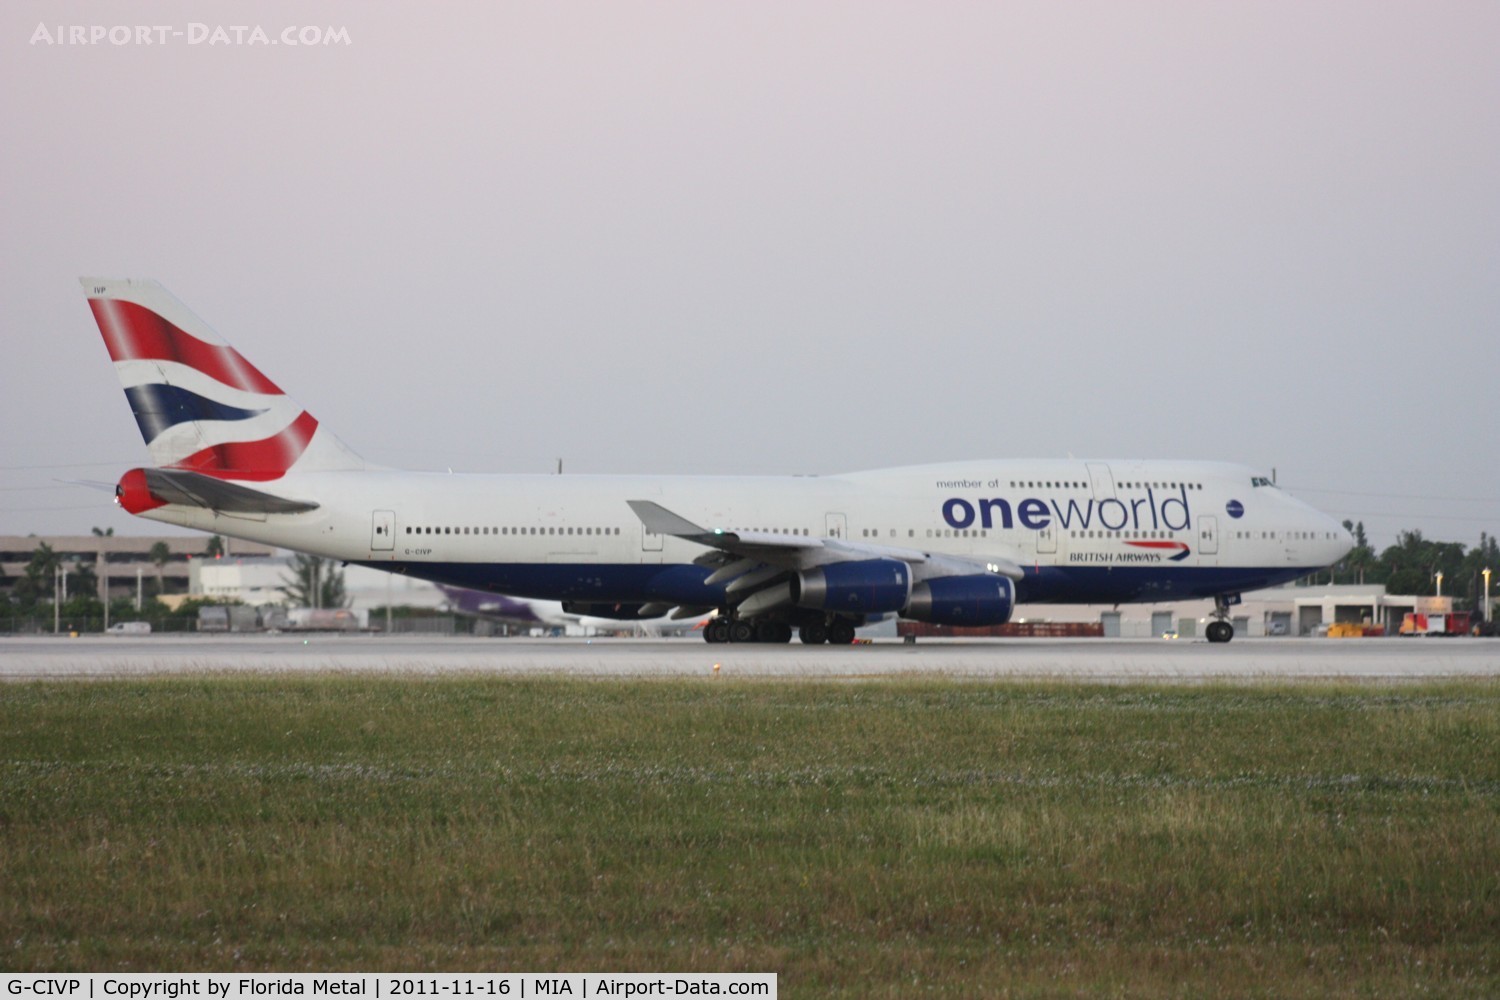 G-CIVP, 1998 Boeing 747-436 C/N 28850, One World British Airways